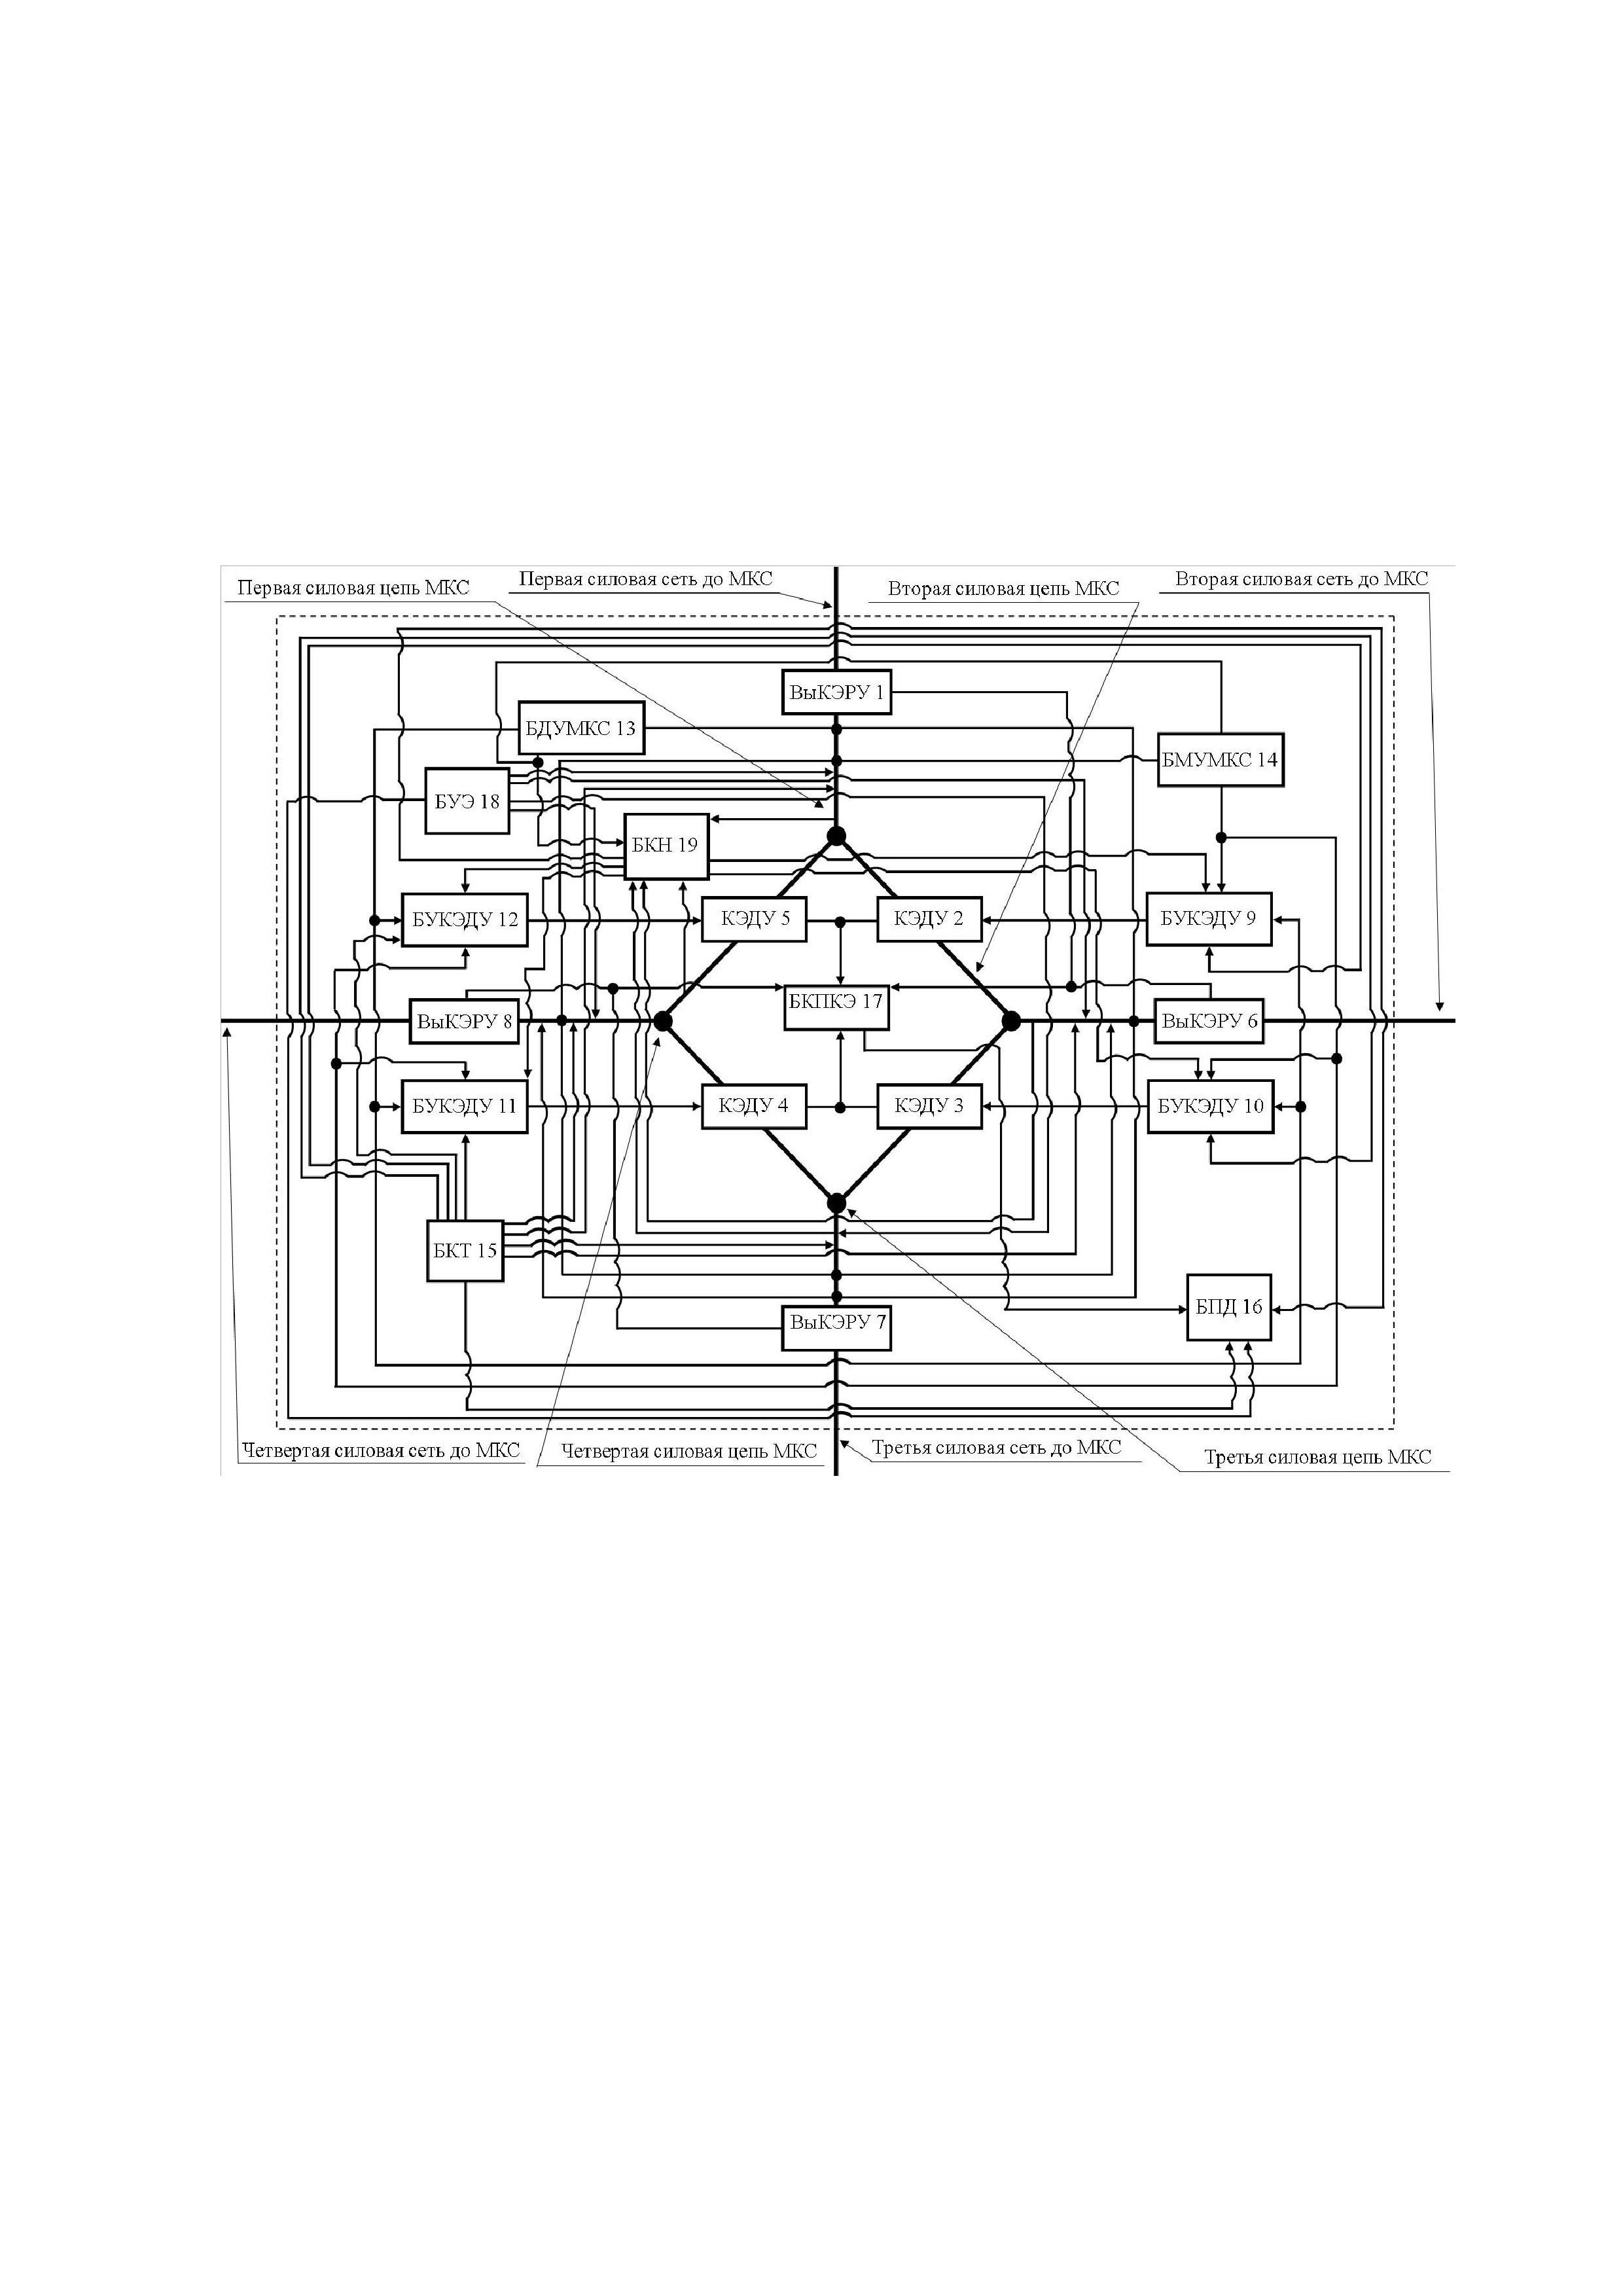 Мультиконтактная коммутационная система, имеющая независимое управление четырьмя силовыми контактными группами, соединёнными по мостовой схеме